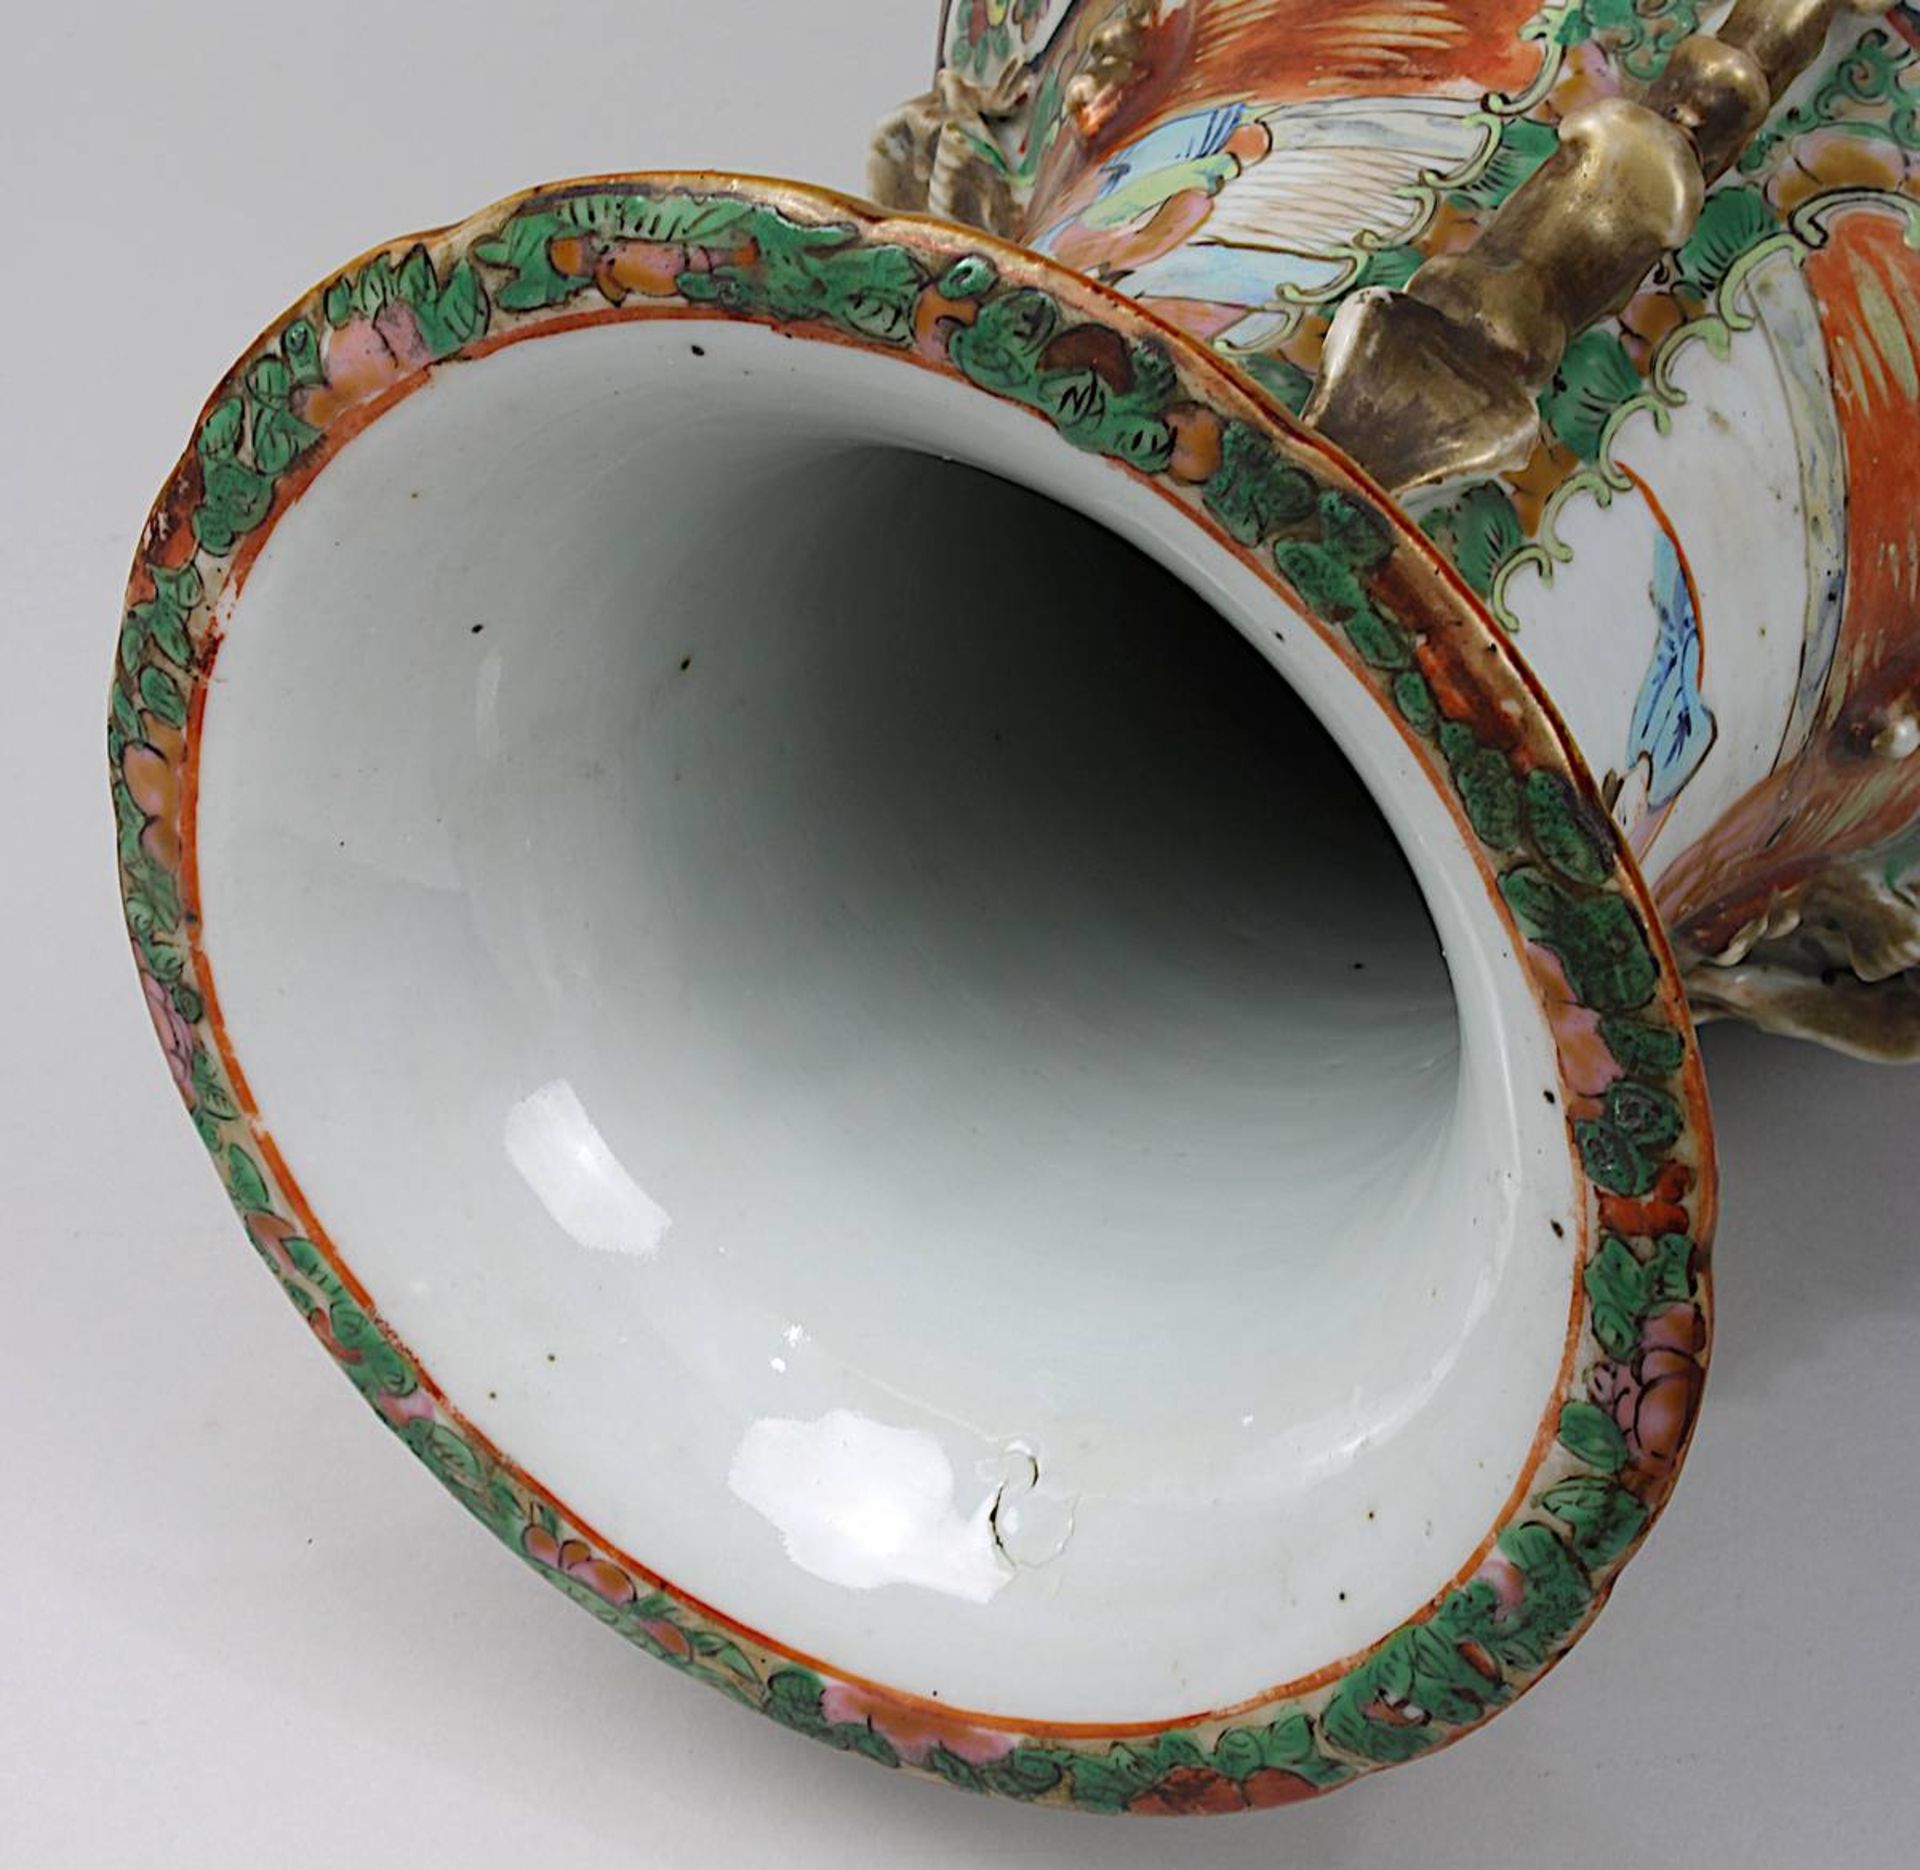 Paar Vasen famille rose, China 19. Jh., Porzellan weißer Scherben, leicht seladonfarben glasiert, - Bild 6 aus 6